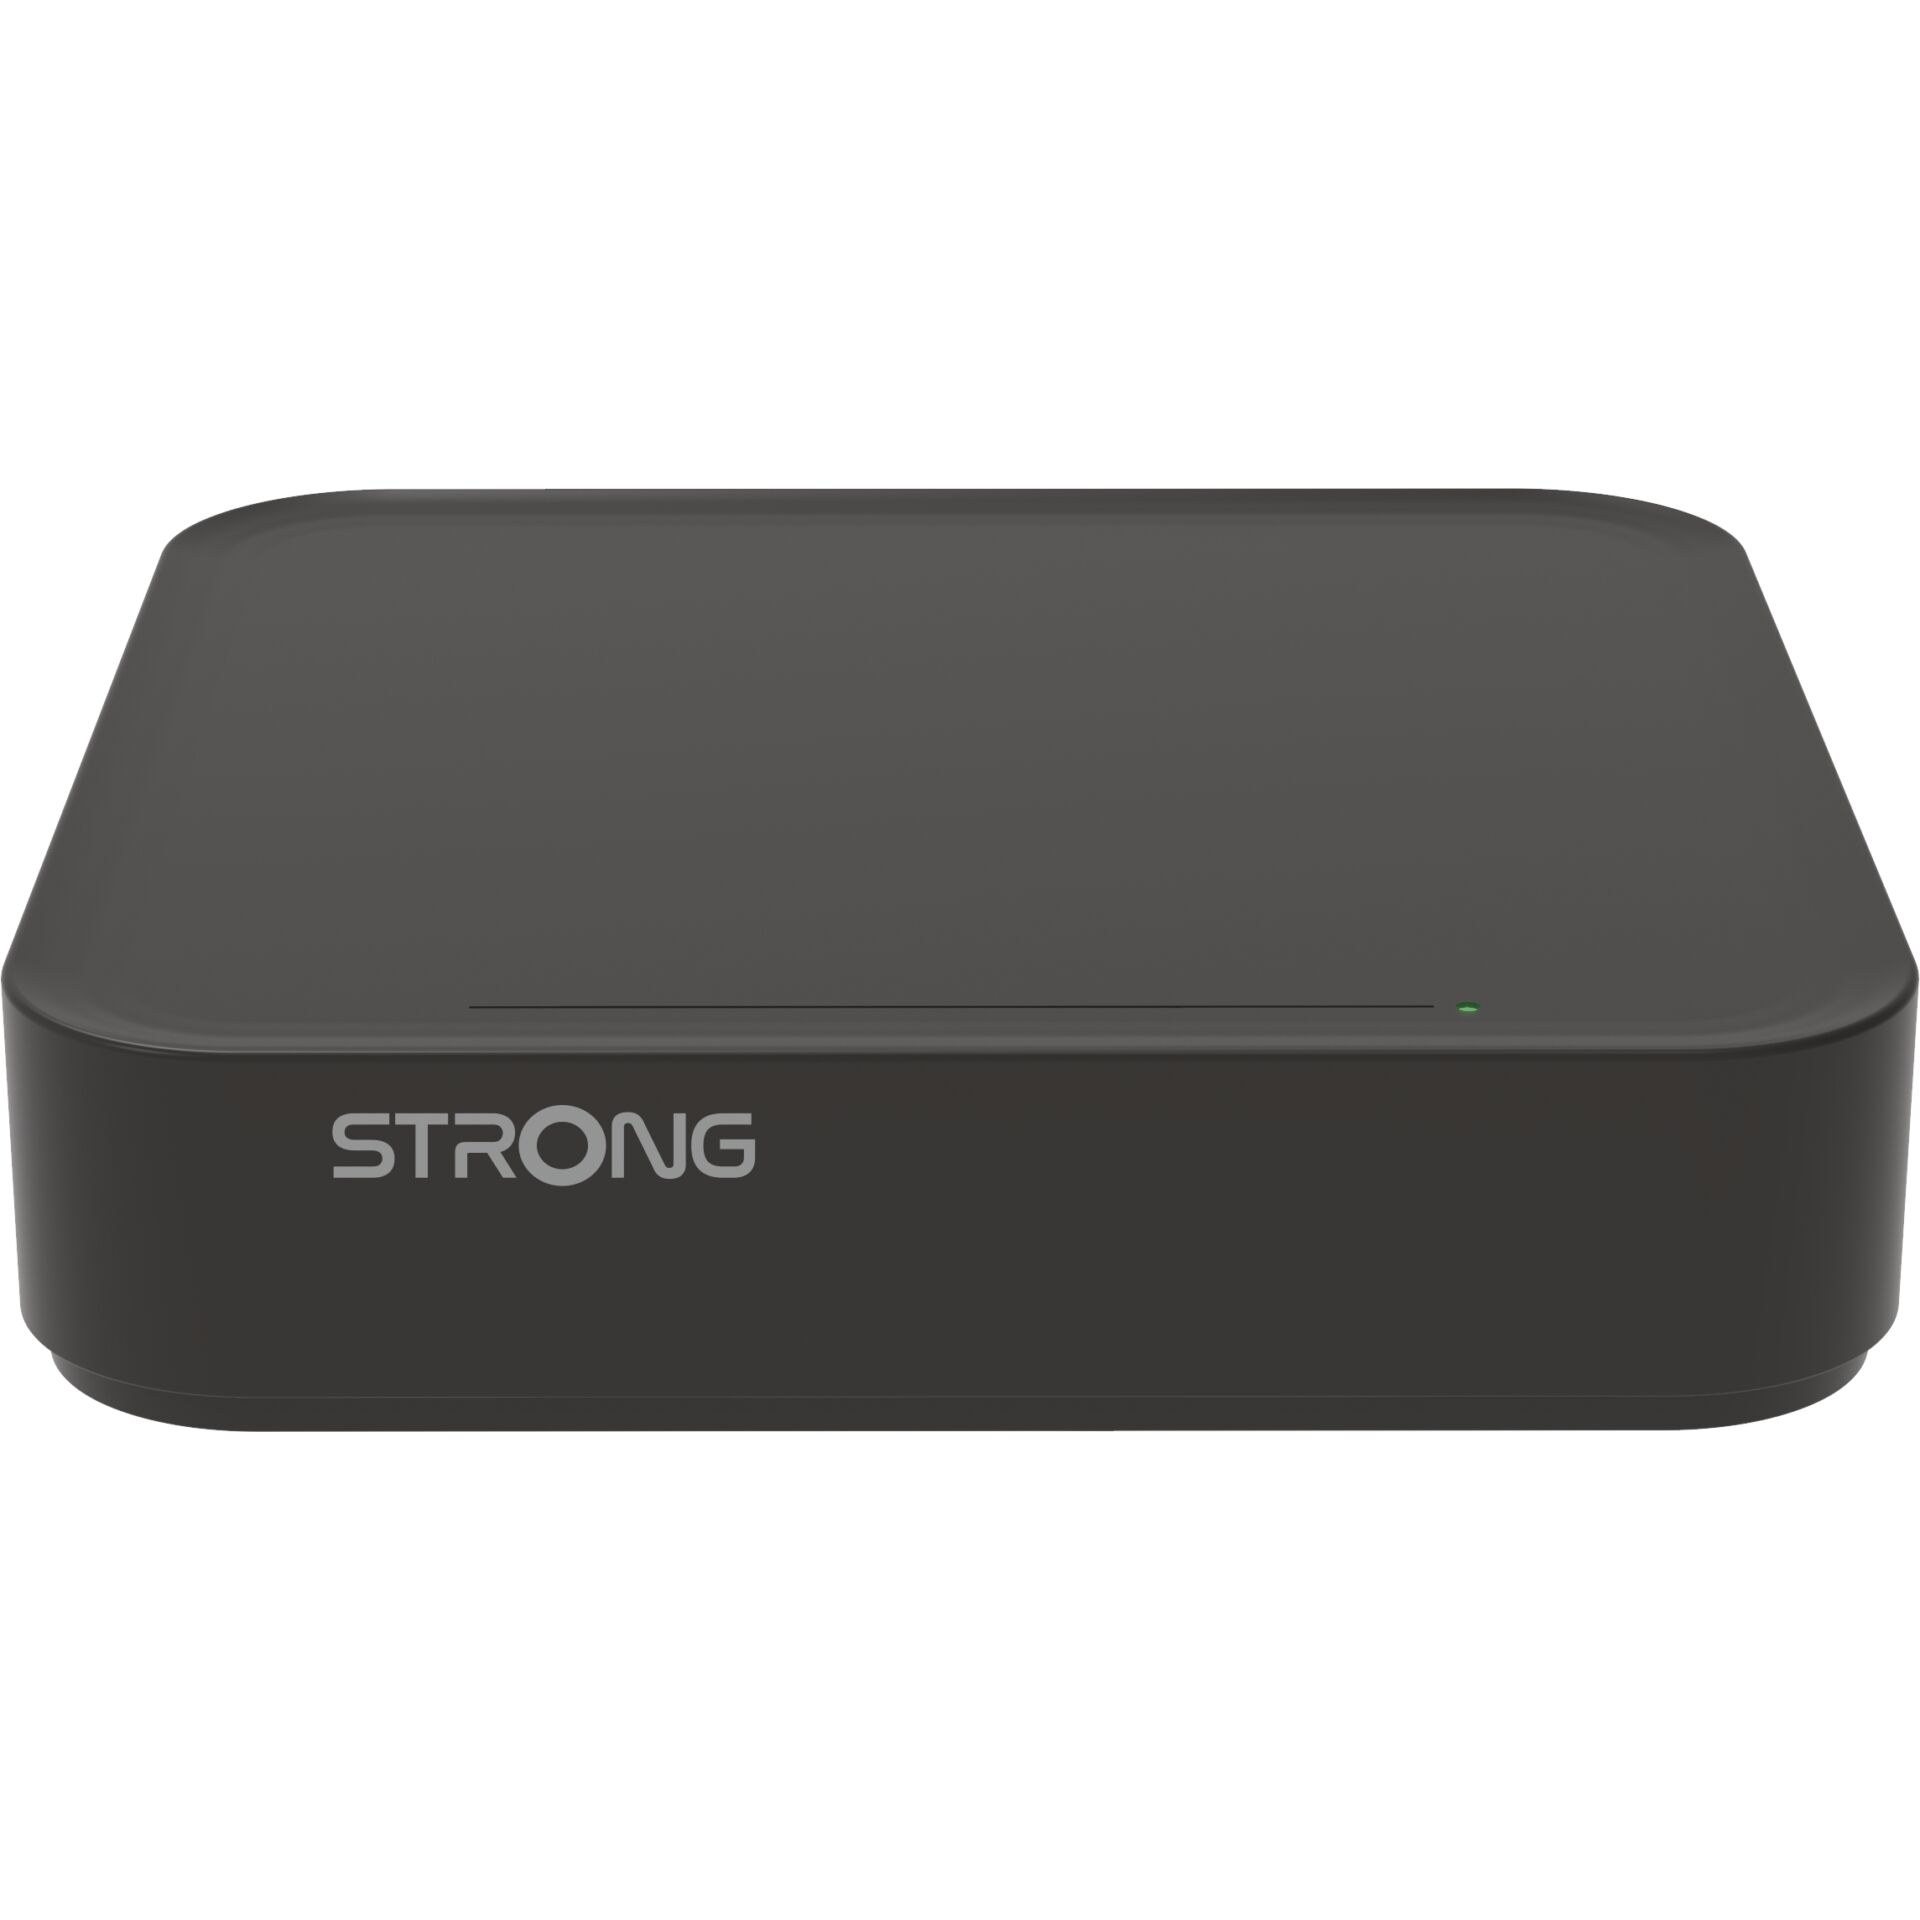 Strong LEAP-S3 Smart-TV-Box Schwarz 4K Ultra HD 16 GB WLAN Ethernet/LAN